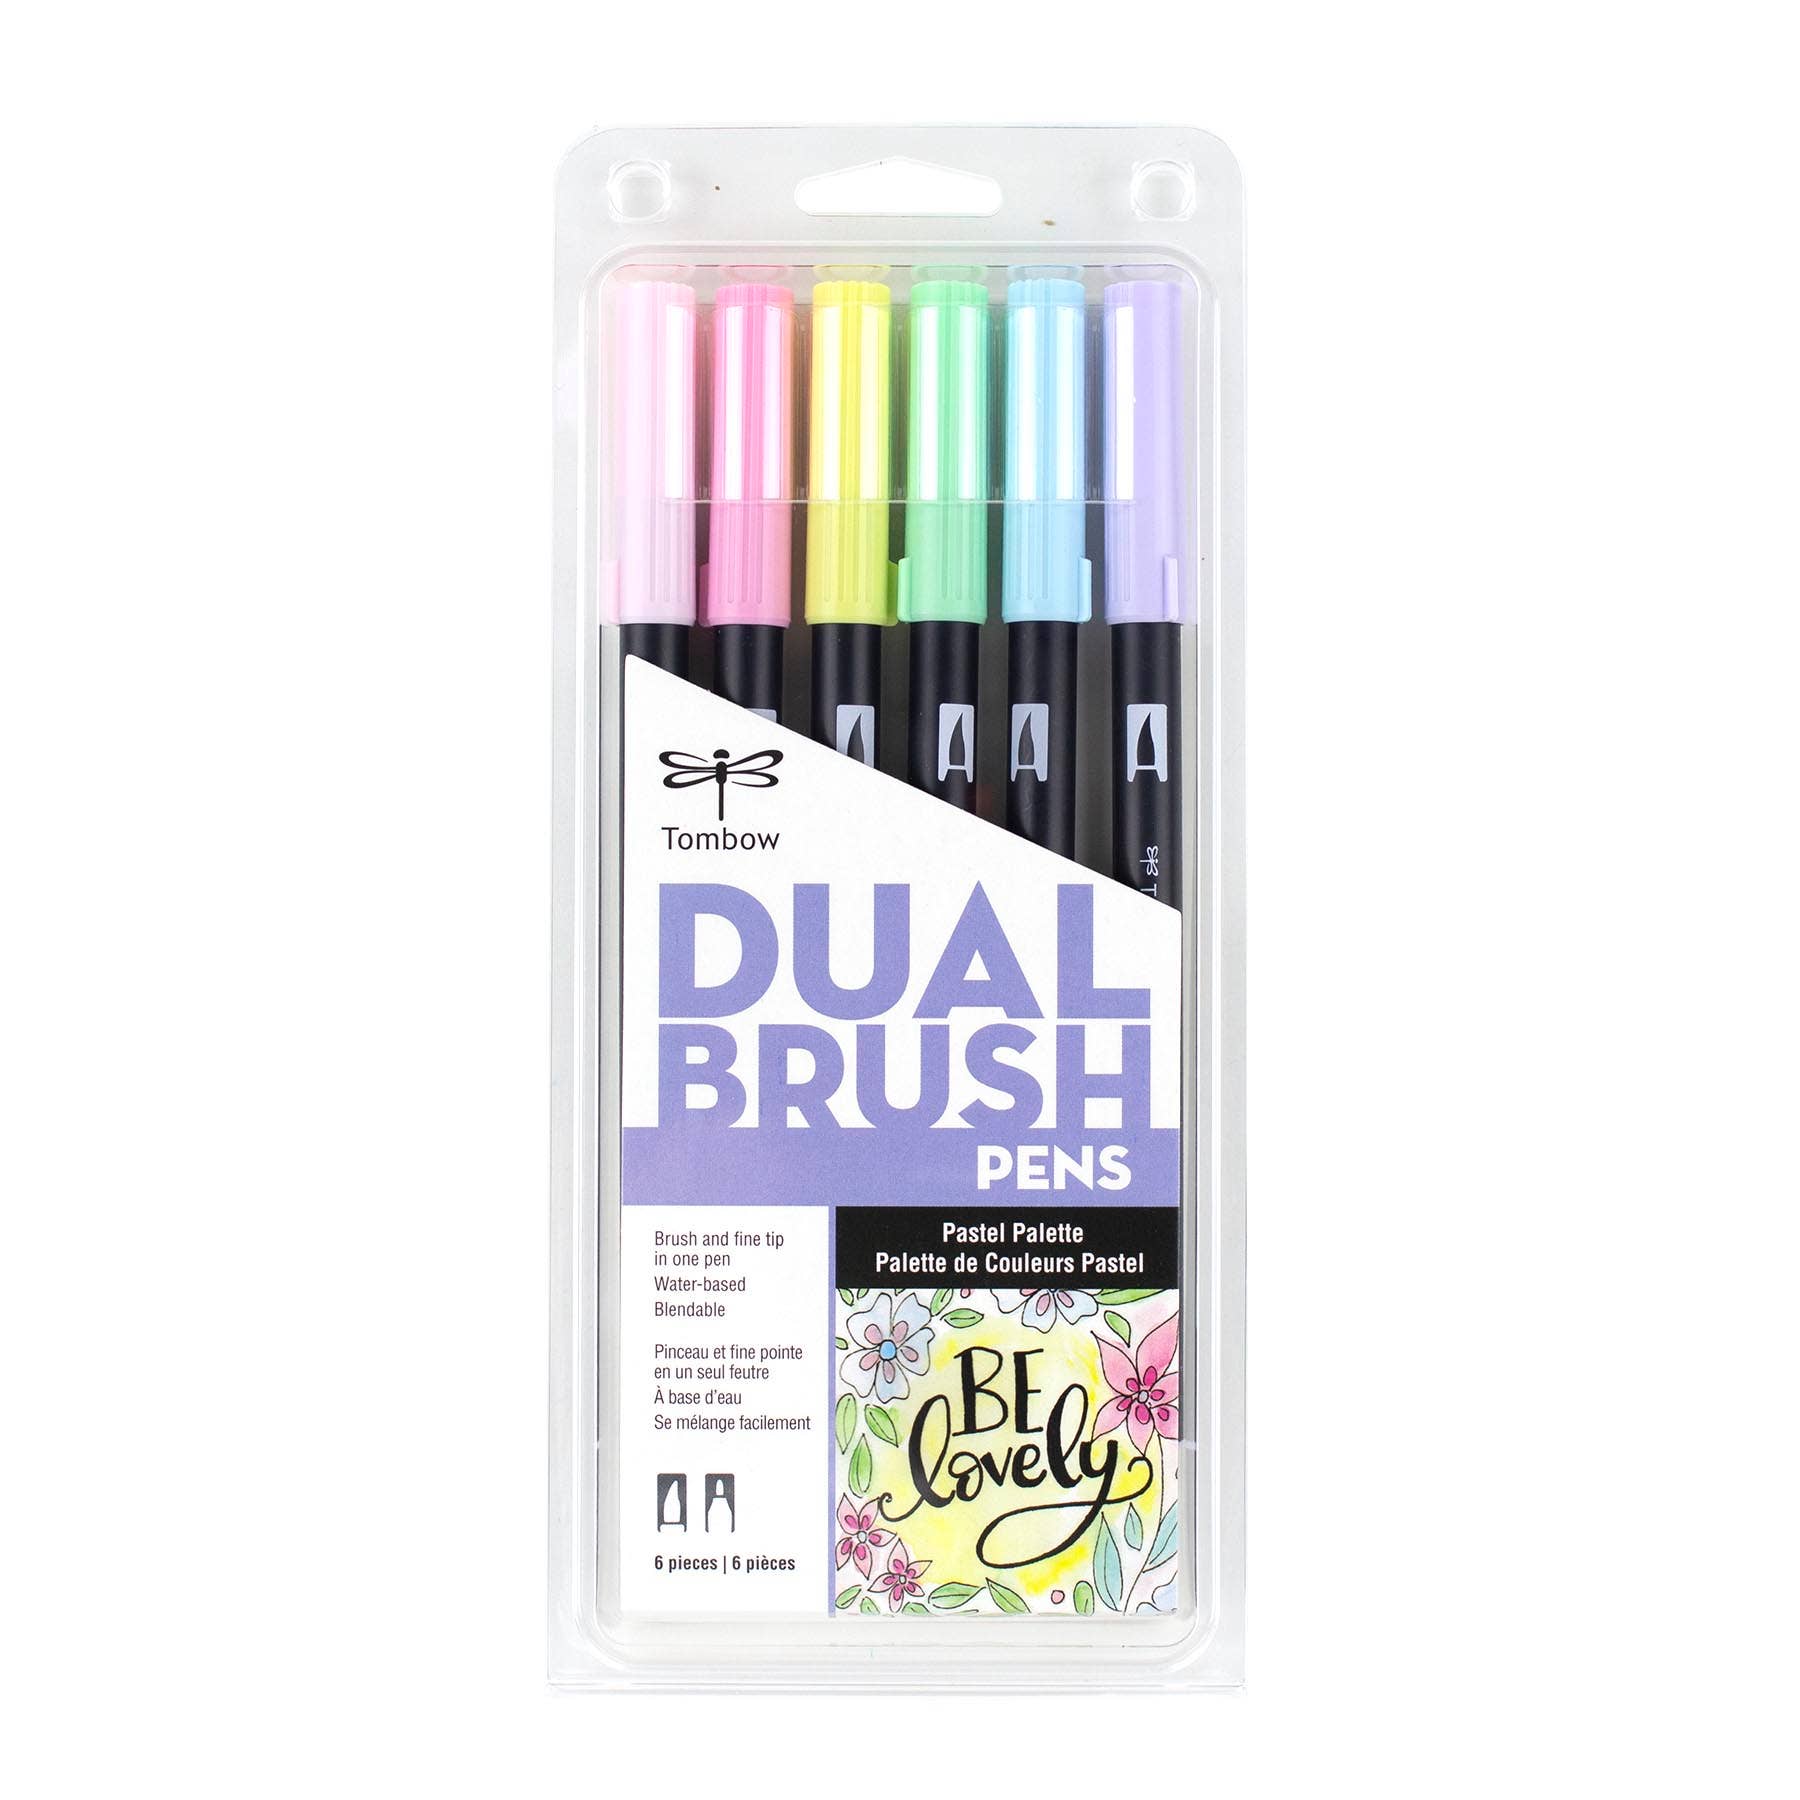 Art Pens Set, Brush Pen, Markers